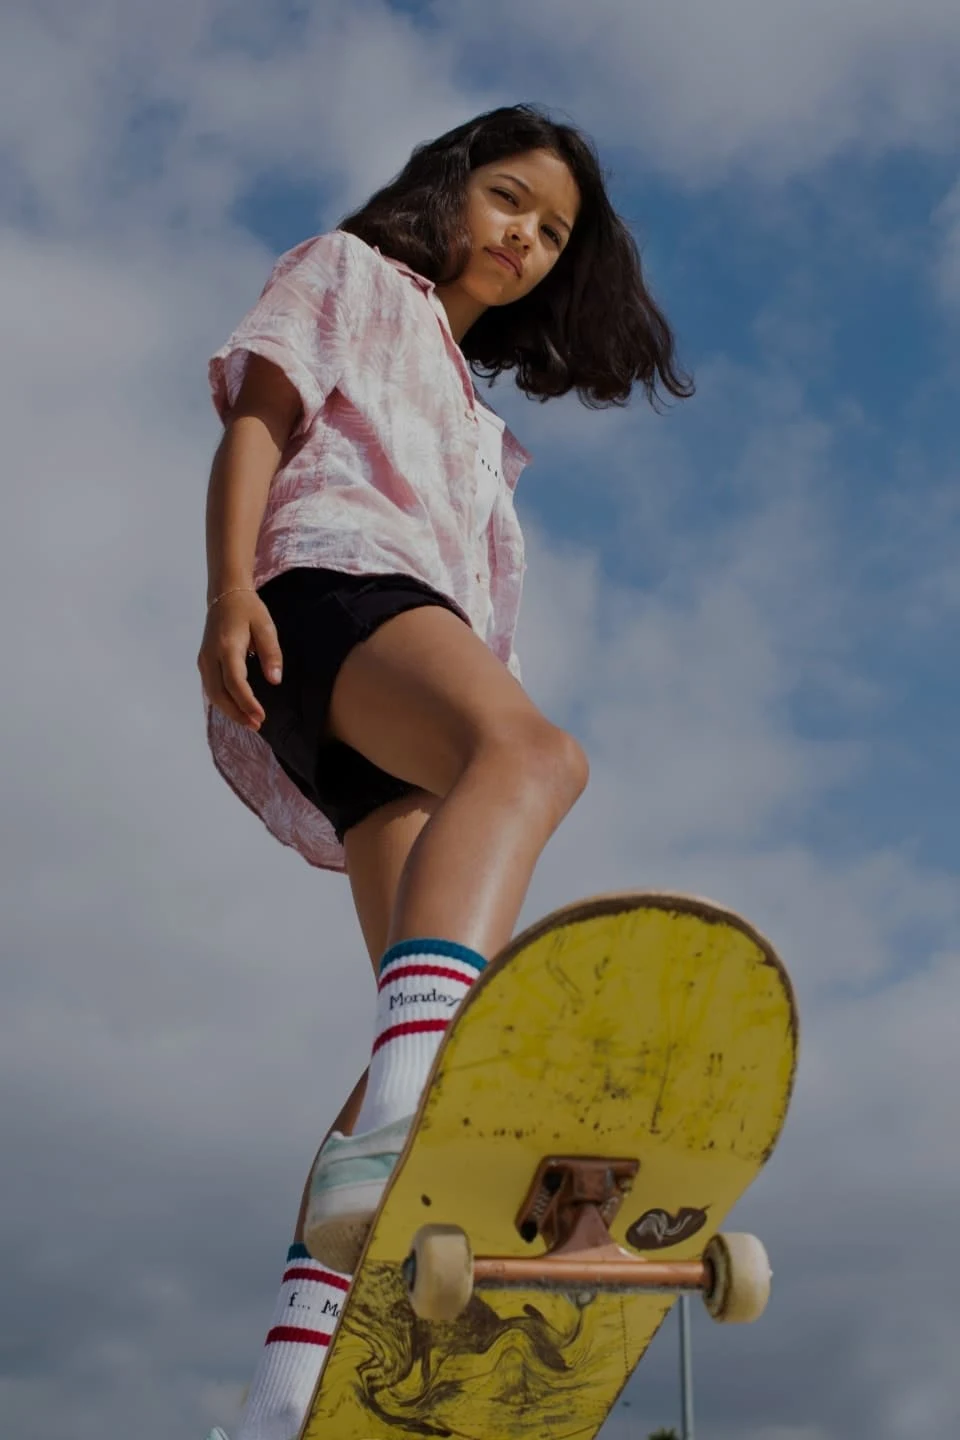 Gadis remaja berambut cokelat mengendarai skateboard kuning